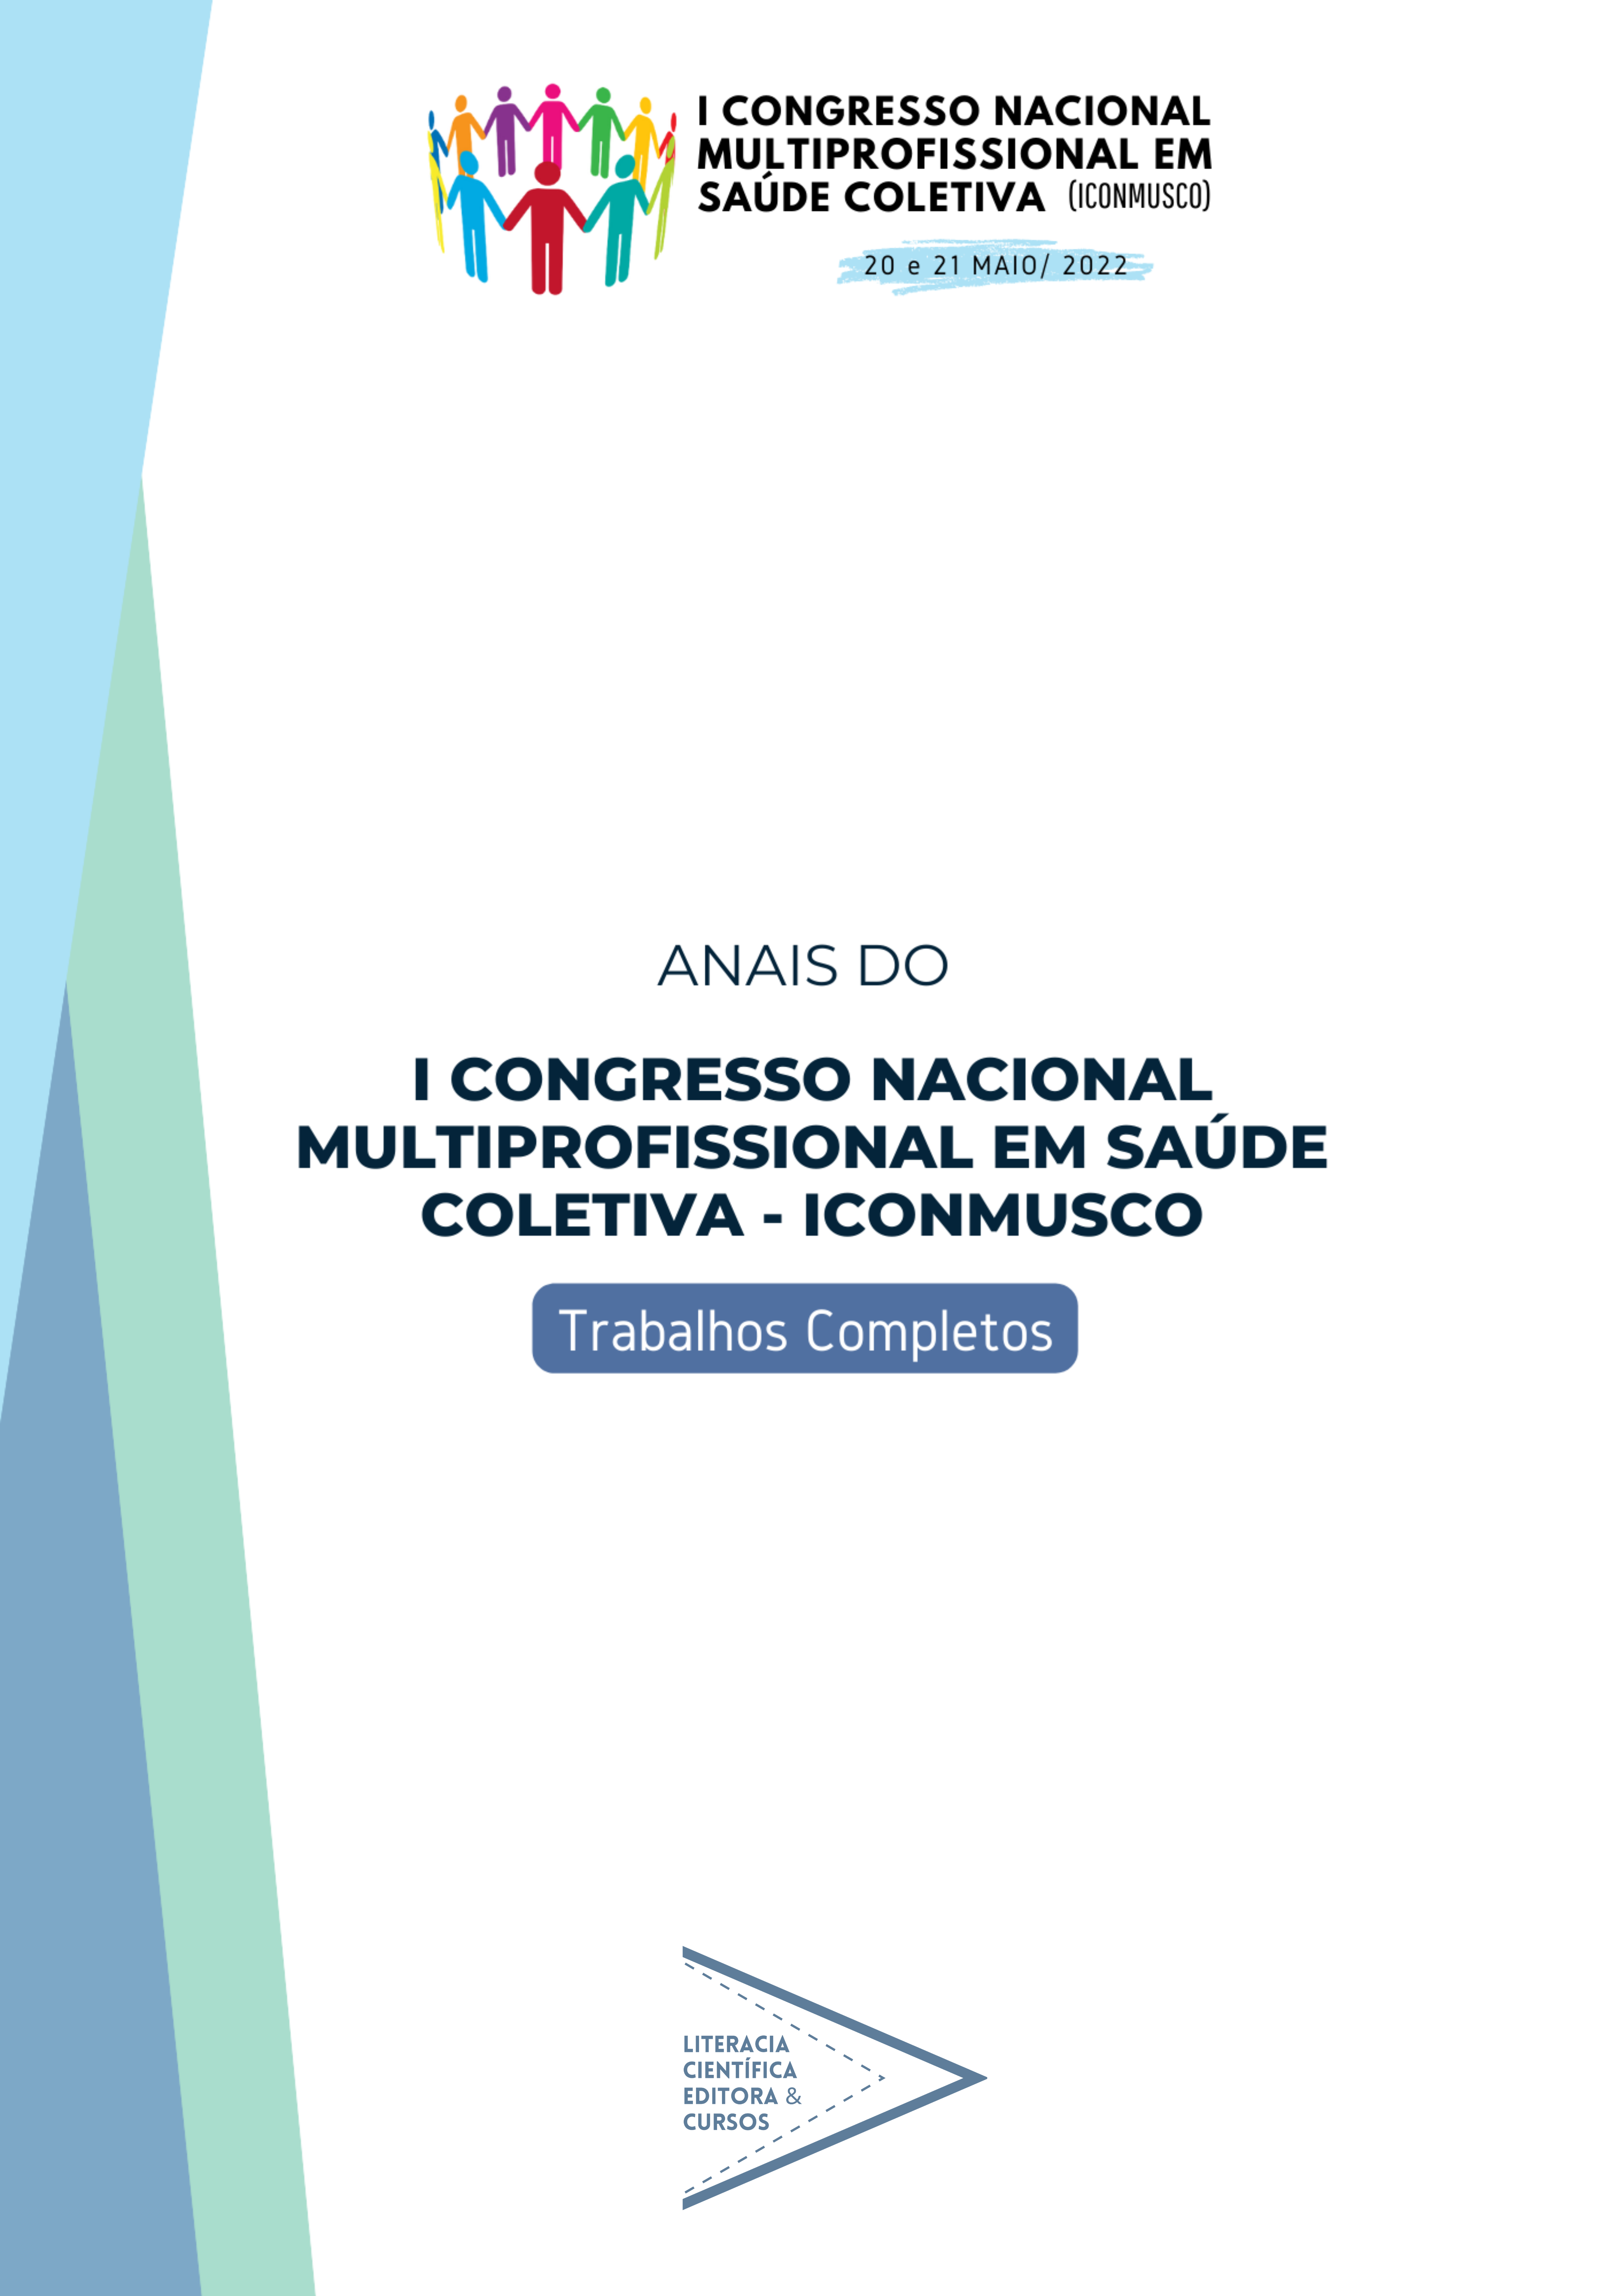 ANAIS DO I CONGRESSO NACIONAL MULTIPROFISSIONAL EM SAÚDE COLETIVA (ICONMUSCO): TRABALHOS COMPLETOS